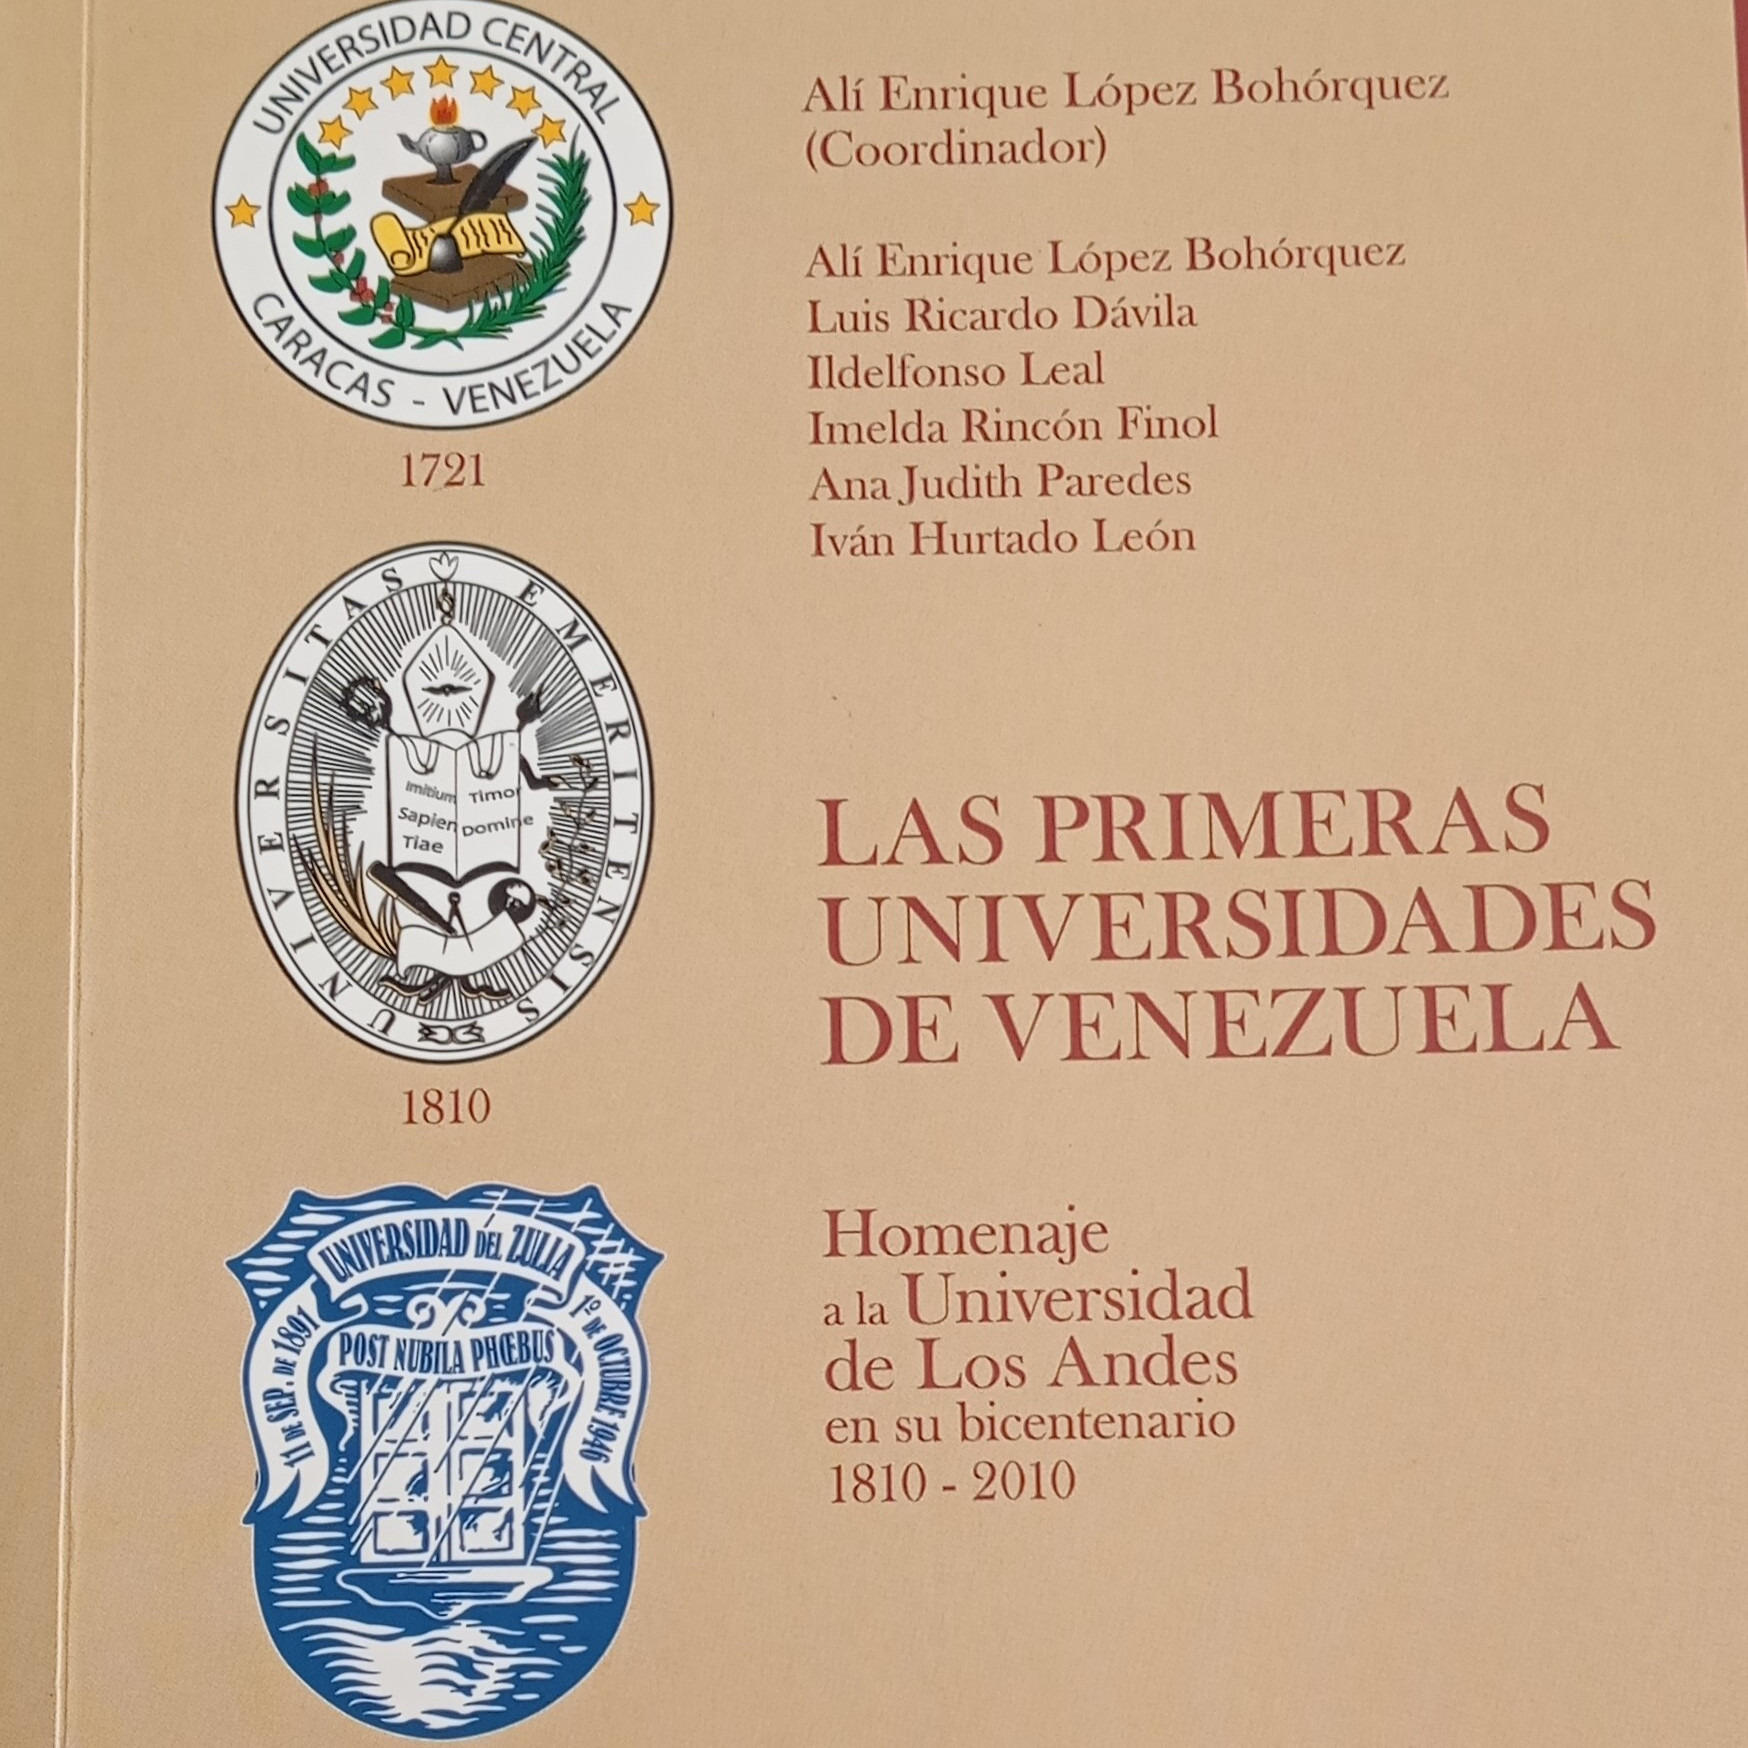 Diario Frontera, Frontera Digital,  Opinión, ,La Universidad de Los Andes y la cátedra para su historia por Alí Enrique López Bohórquez (*)